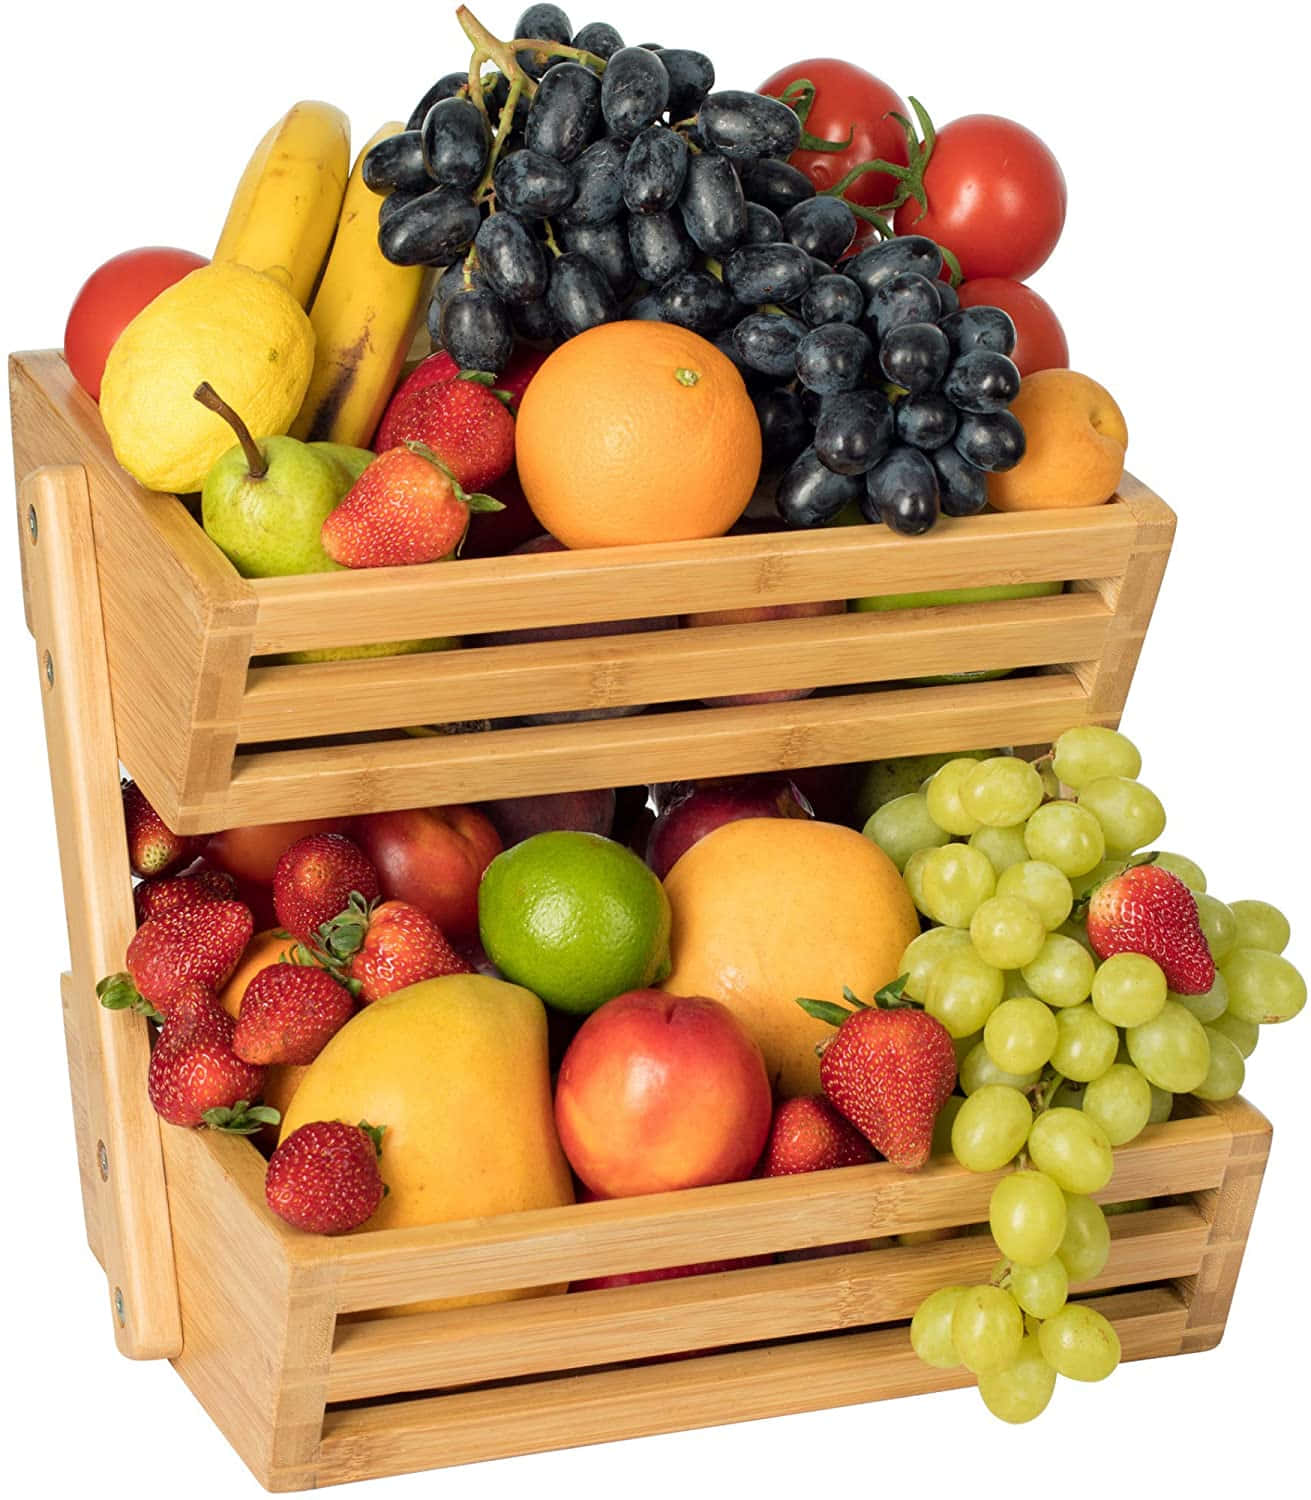 Willkommenim Fruits Basket.